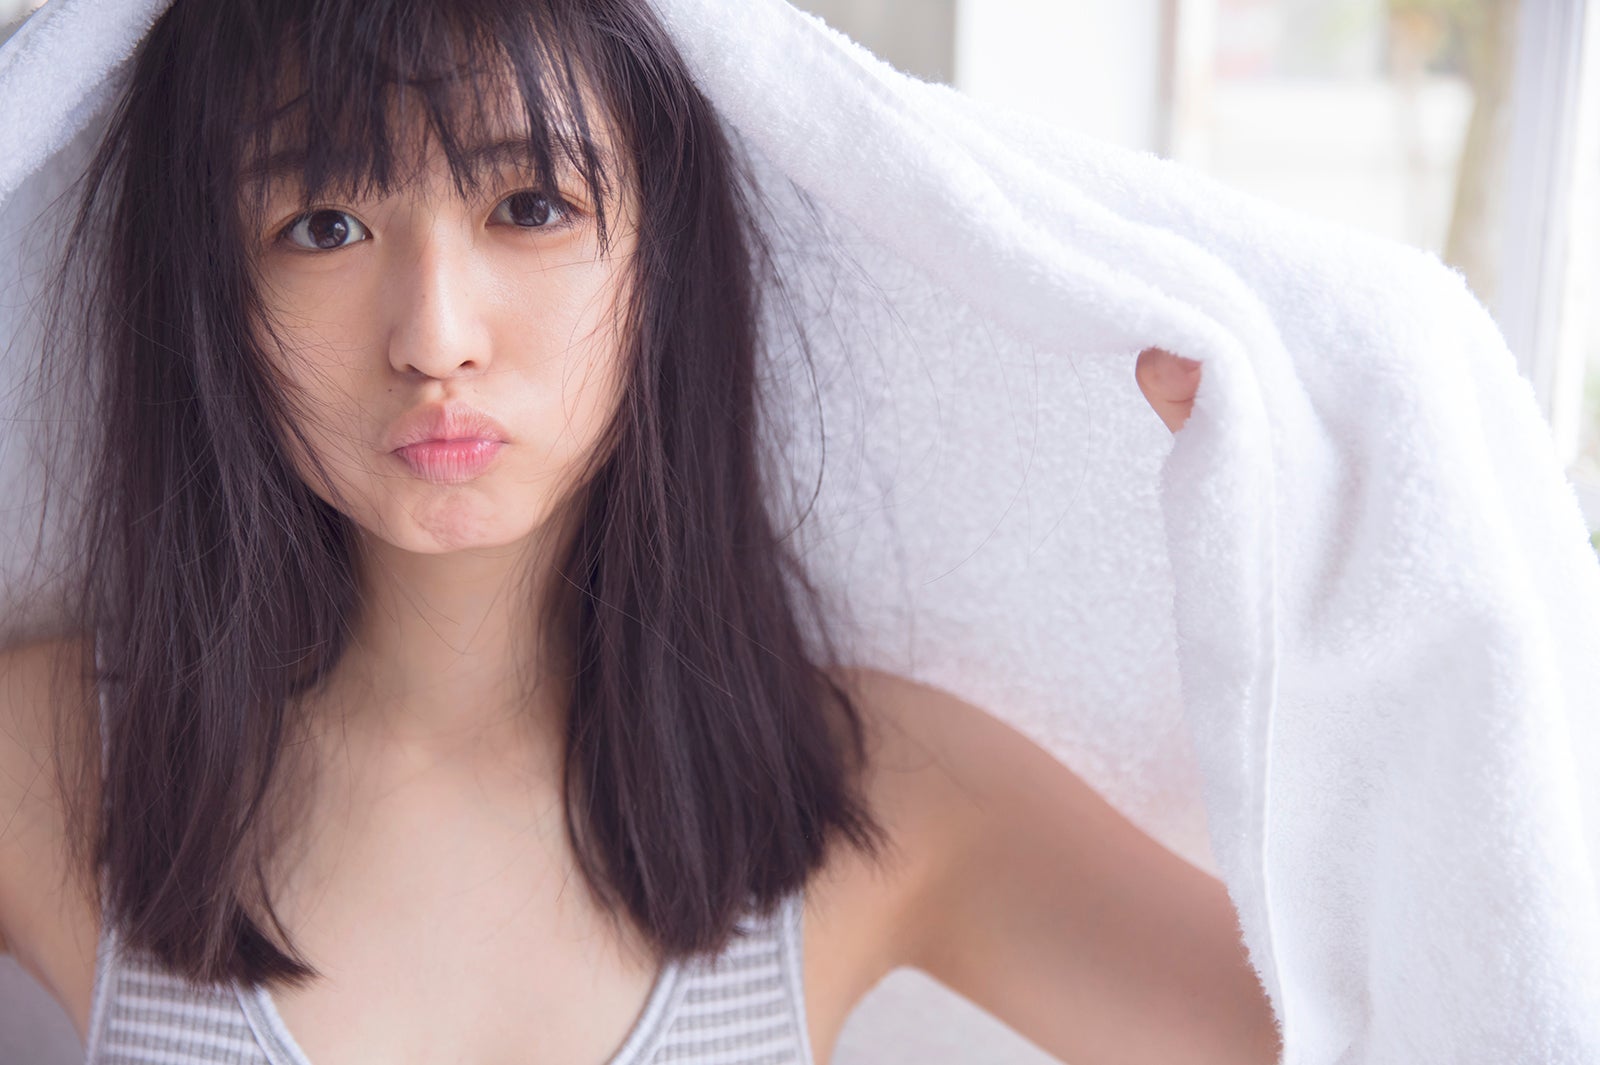 欅坂46長濱ねる ほぼすっぴん で無防備なパジャマ姿 この可愛さは最高すぎる と反響 モデルプレス